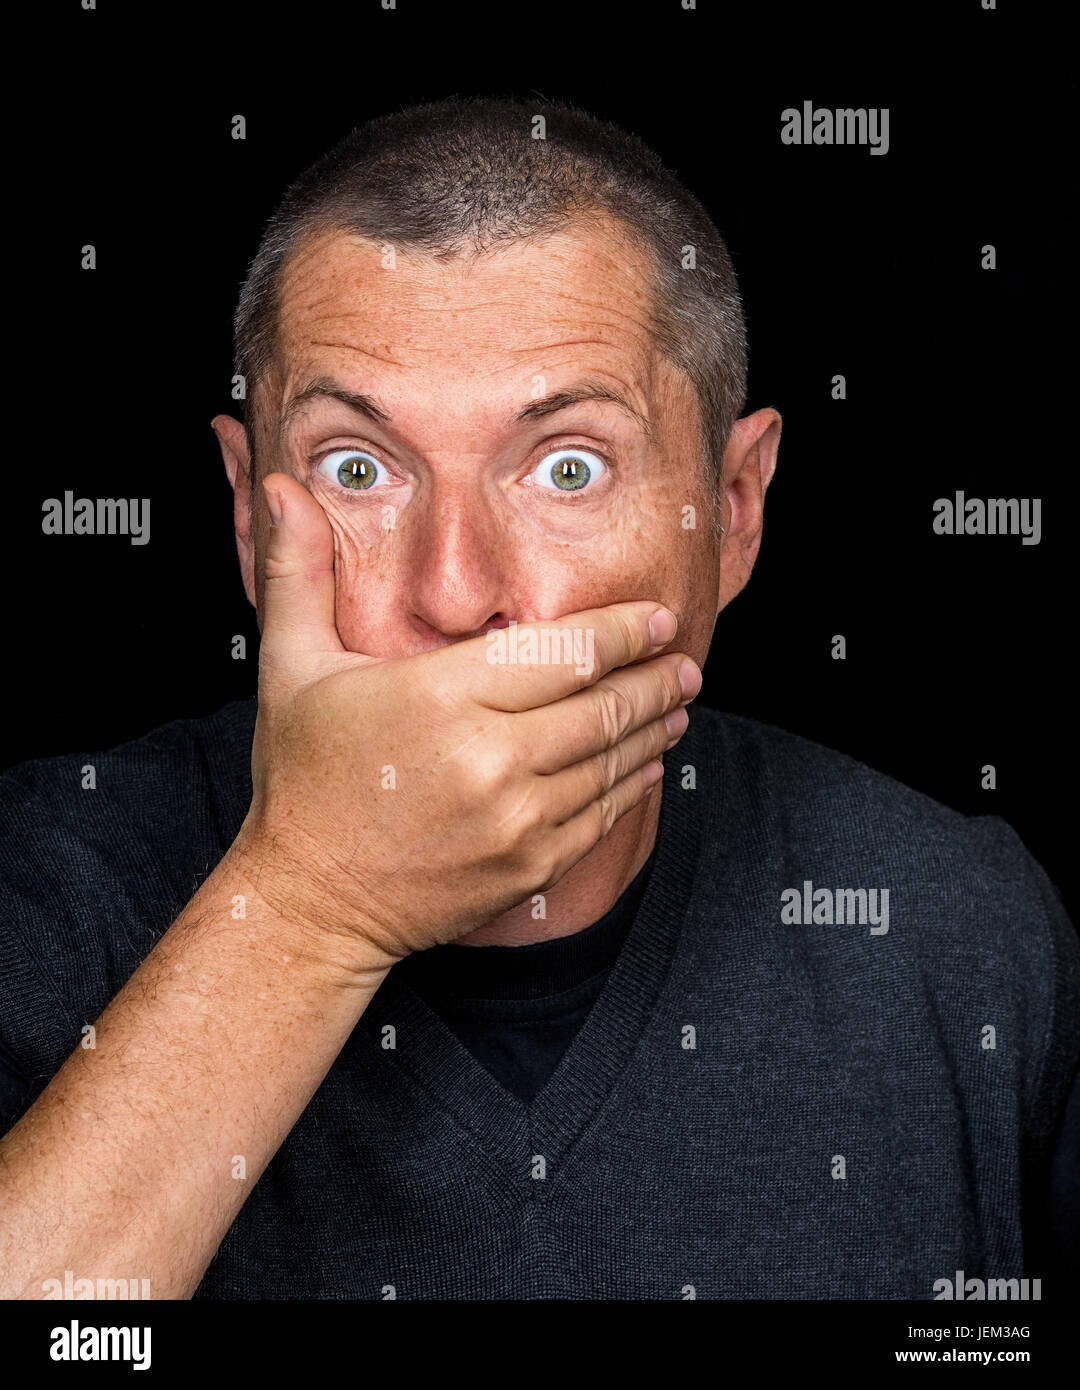 Ritratto di un uomo con emozioni grottesche su sfondo nero Foto Stock